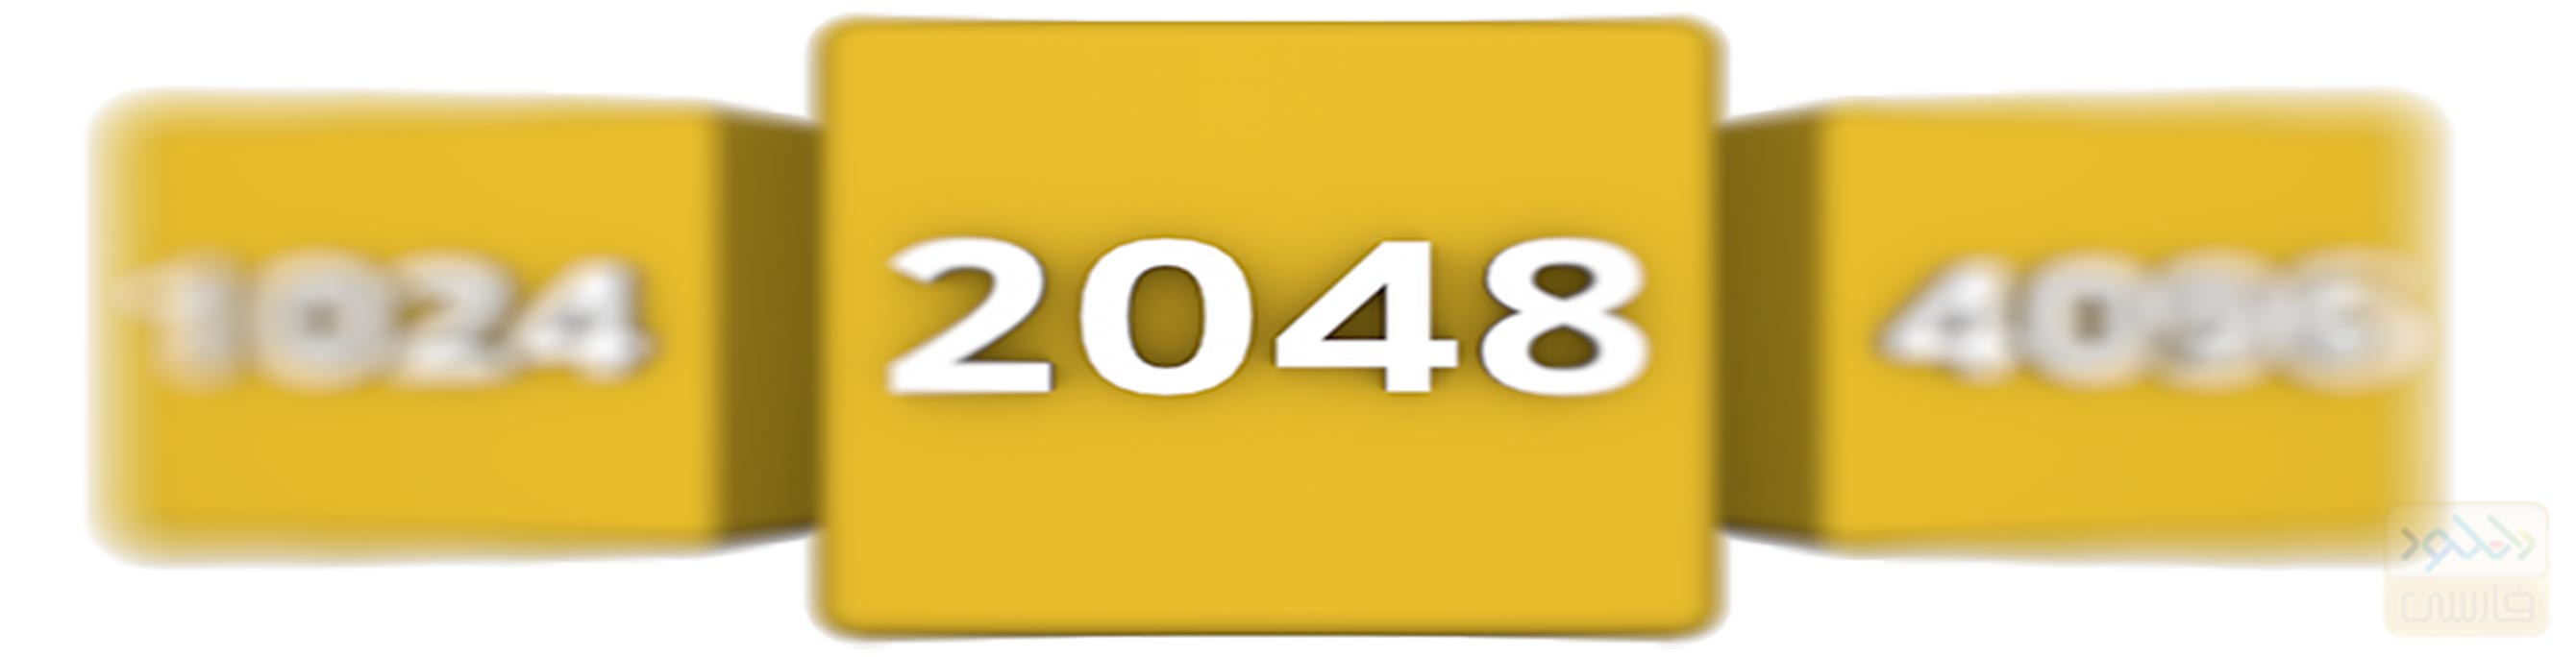 دانلود بازی 2048 برای اندروید و آیفون – ورژن 6.46